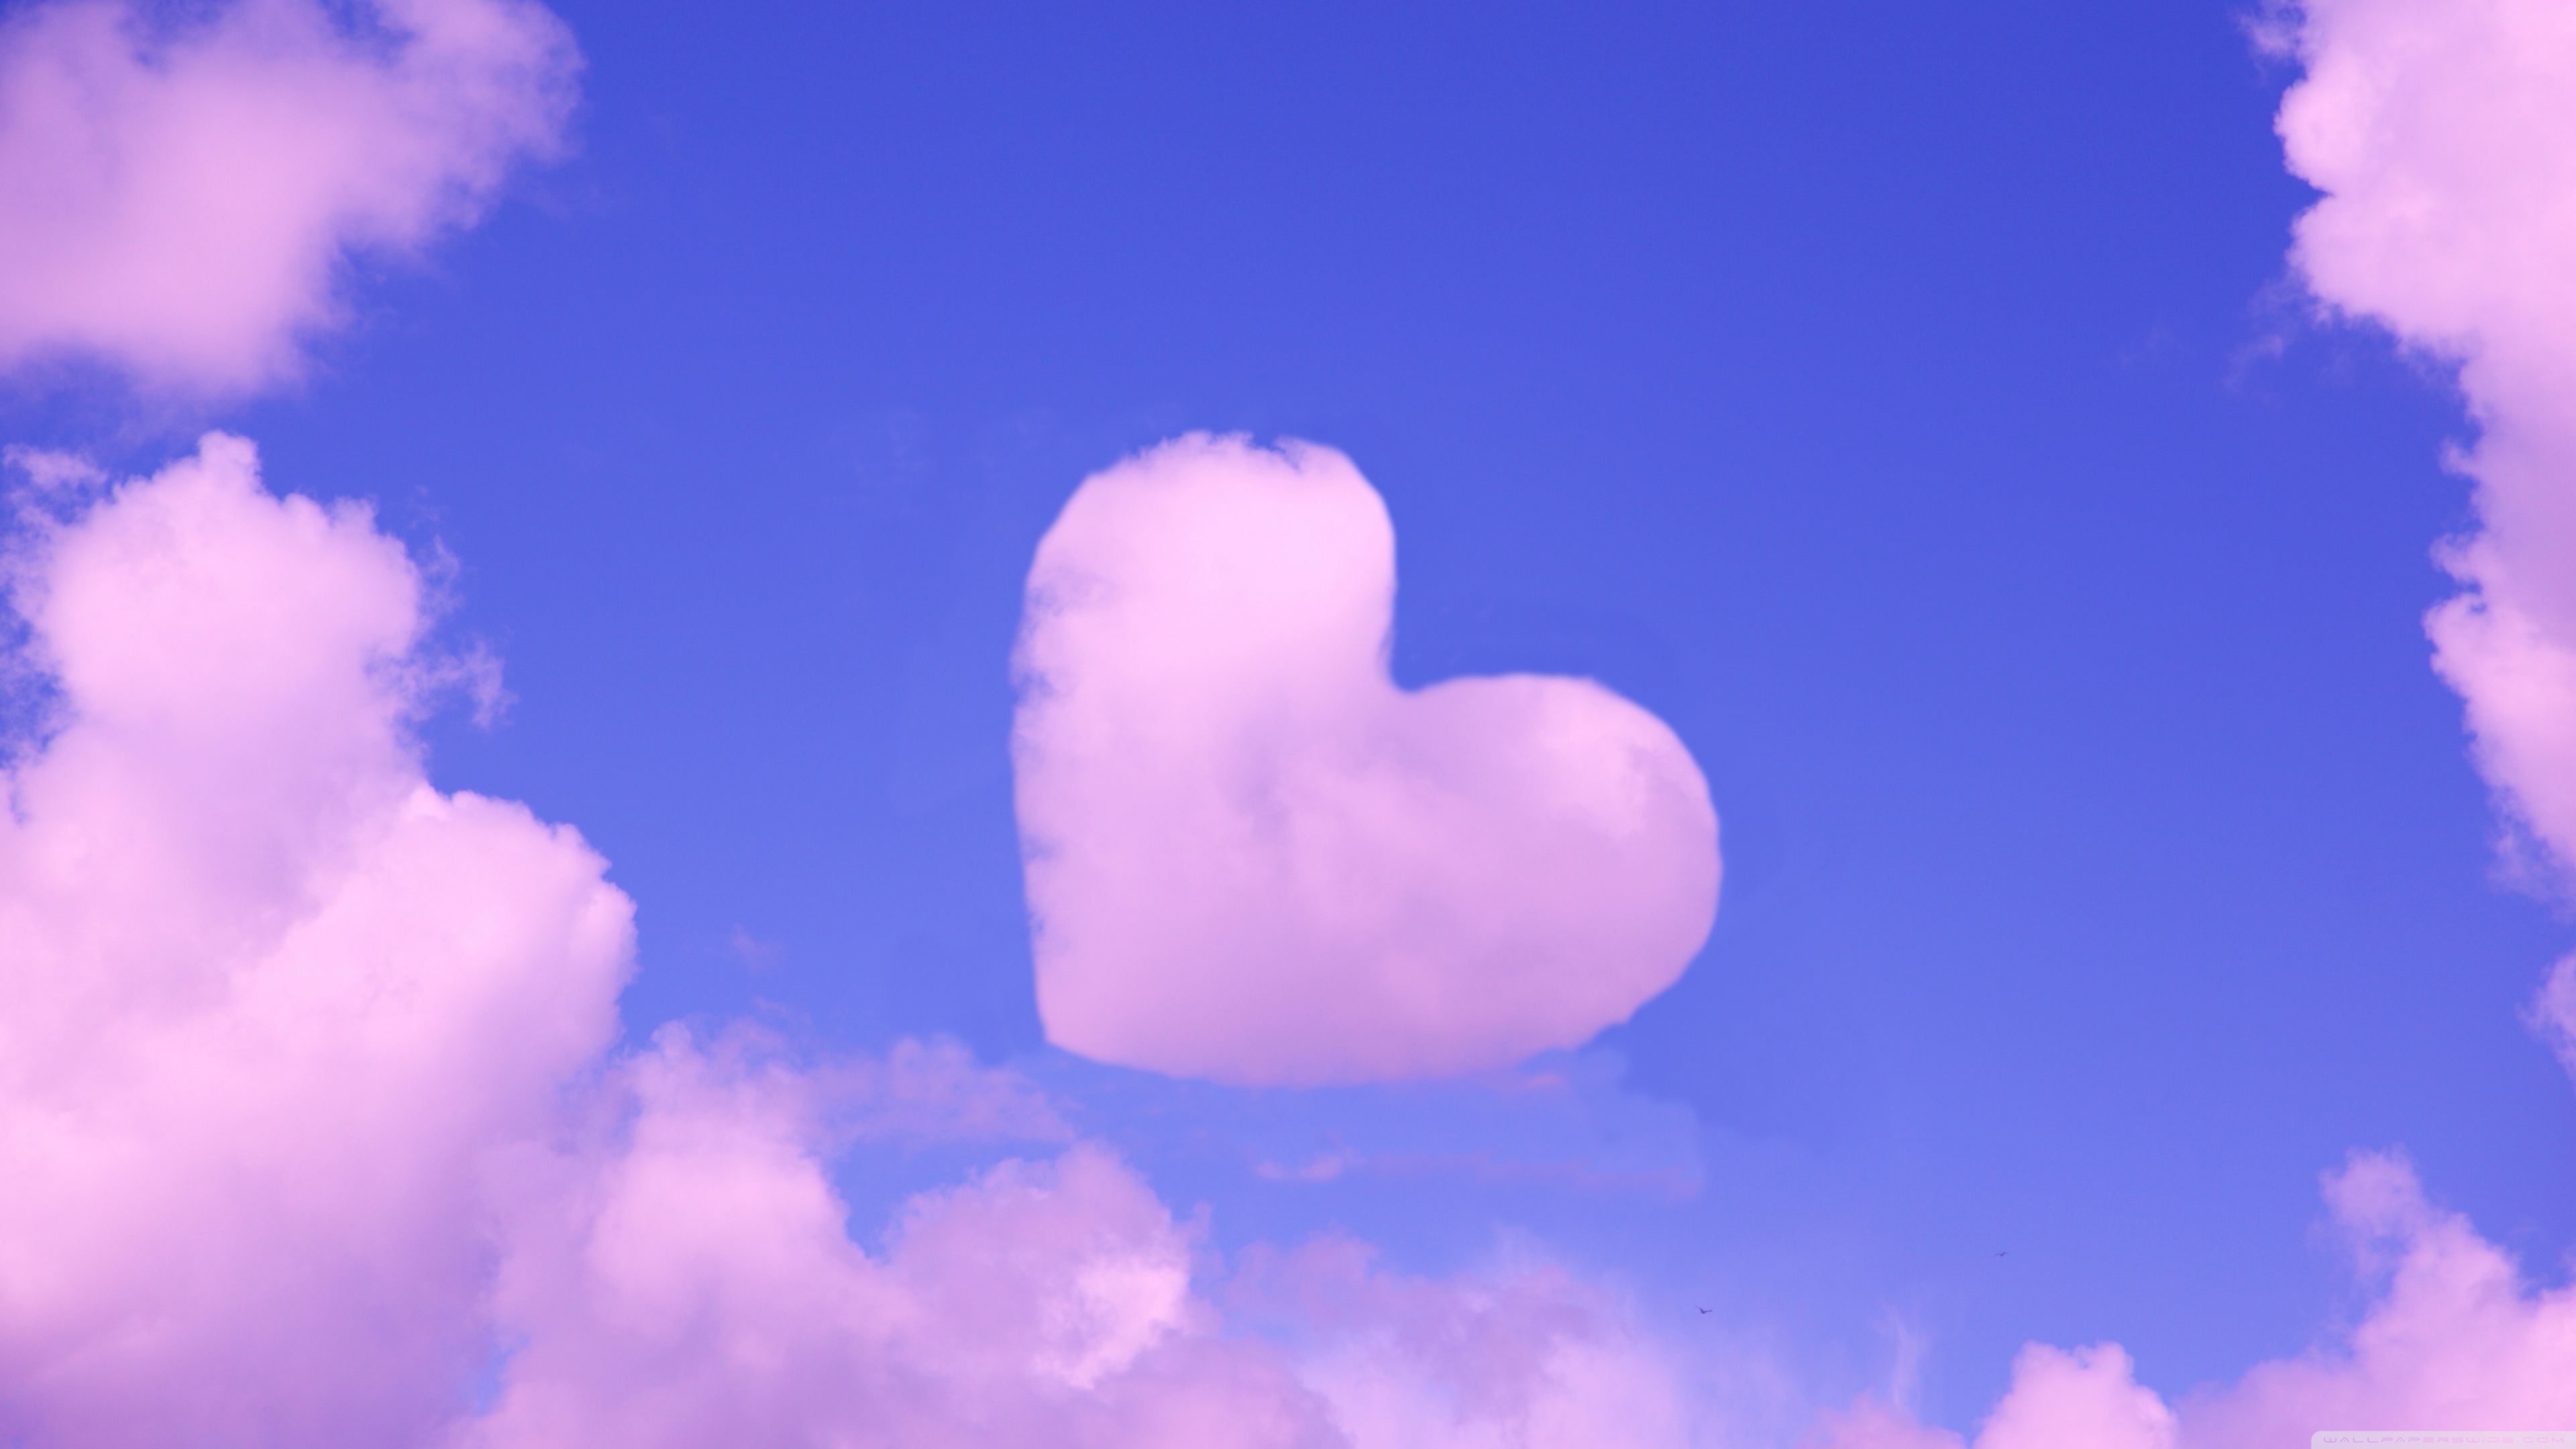 Đám mây hình trái tim màu hồng trong ảnh làm ta nhớ đến tình yêu nồng nàn và đầy ý nghĩa. Hãy dành thời gian để chiêm ngưỡng và tìm thấy những hạnh phúc trong tình yêu.